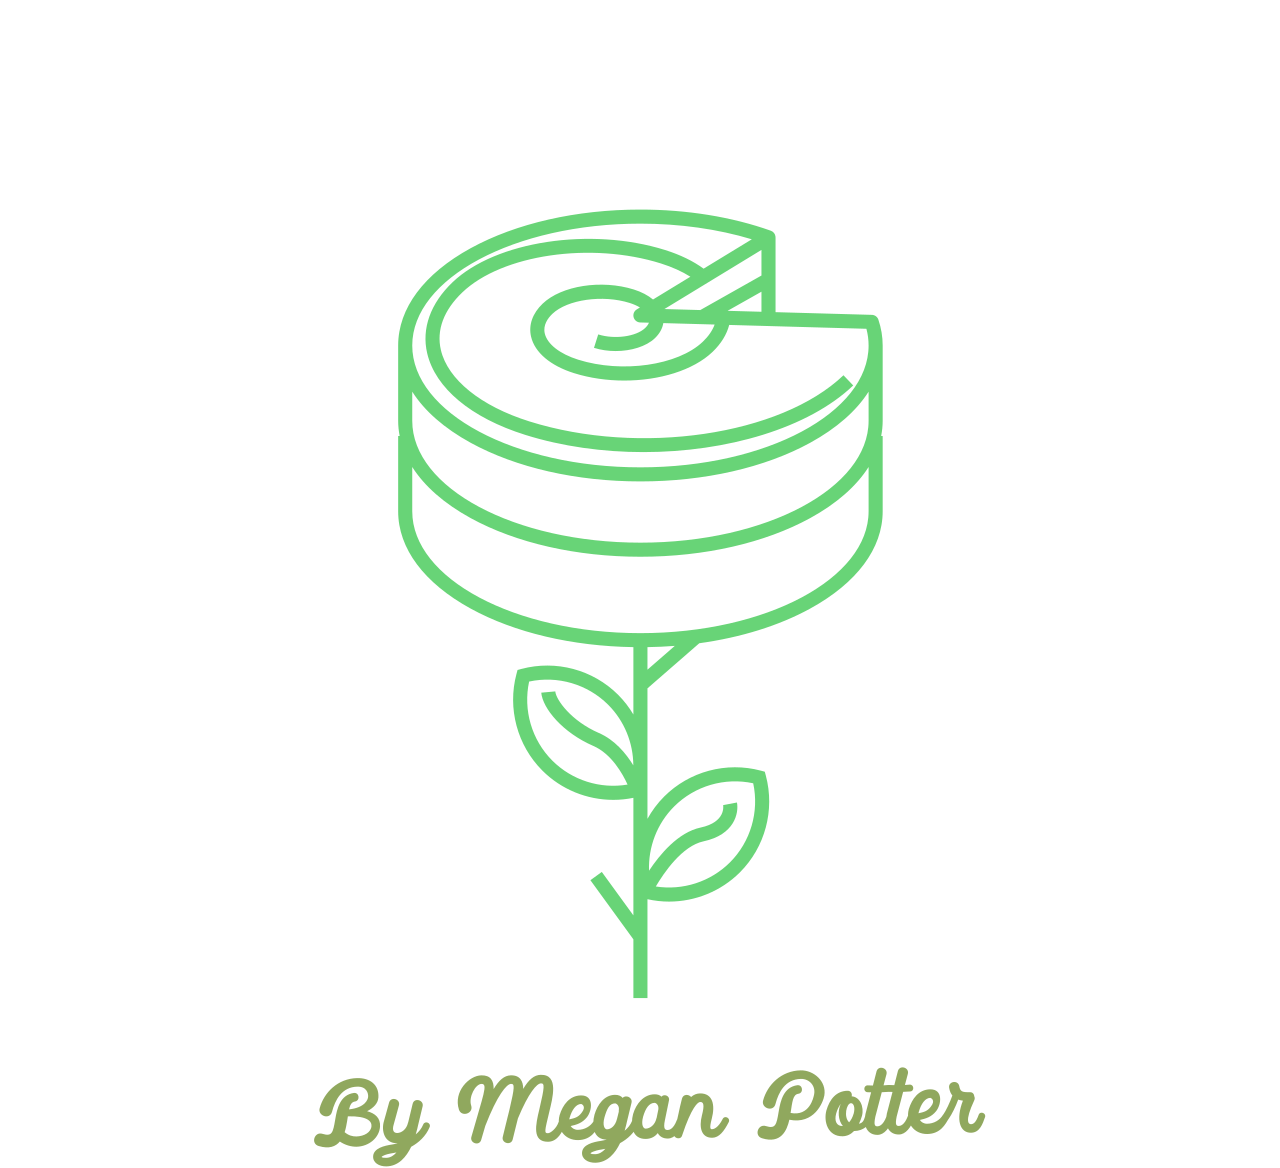 Flour Power's web page